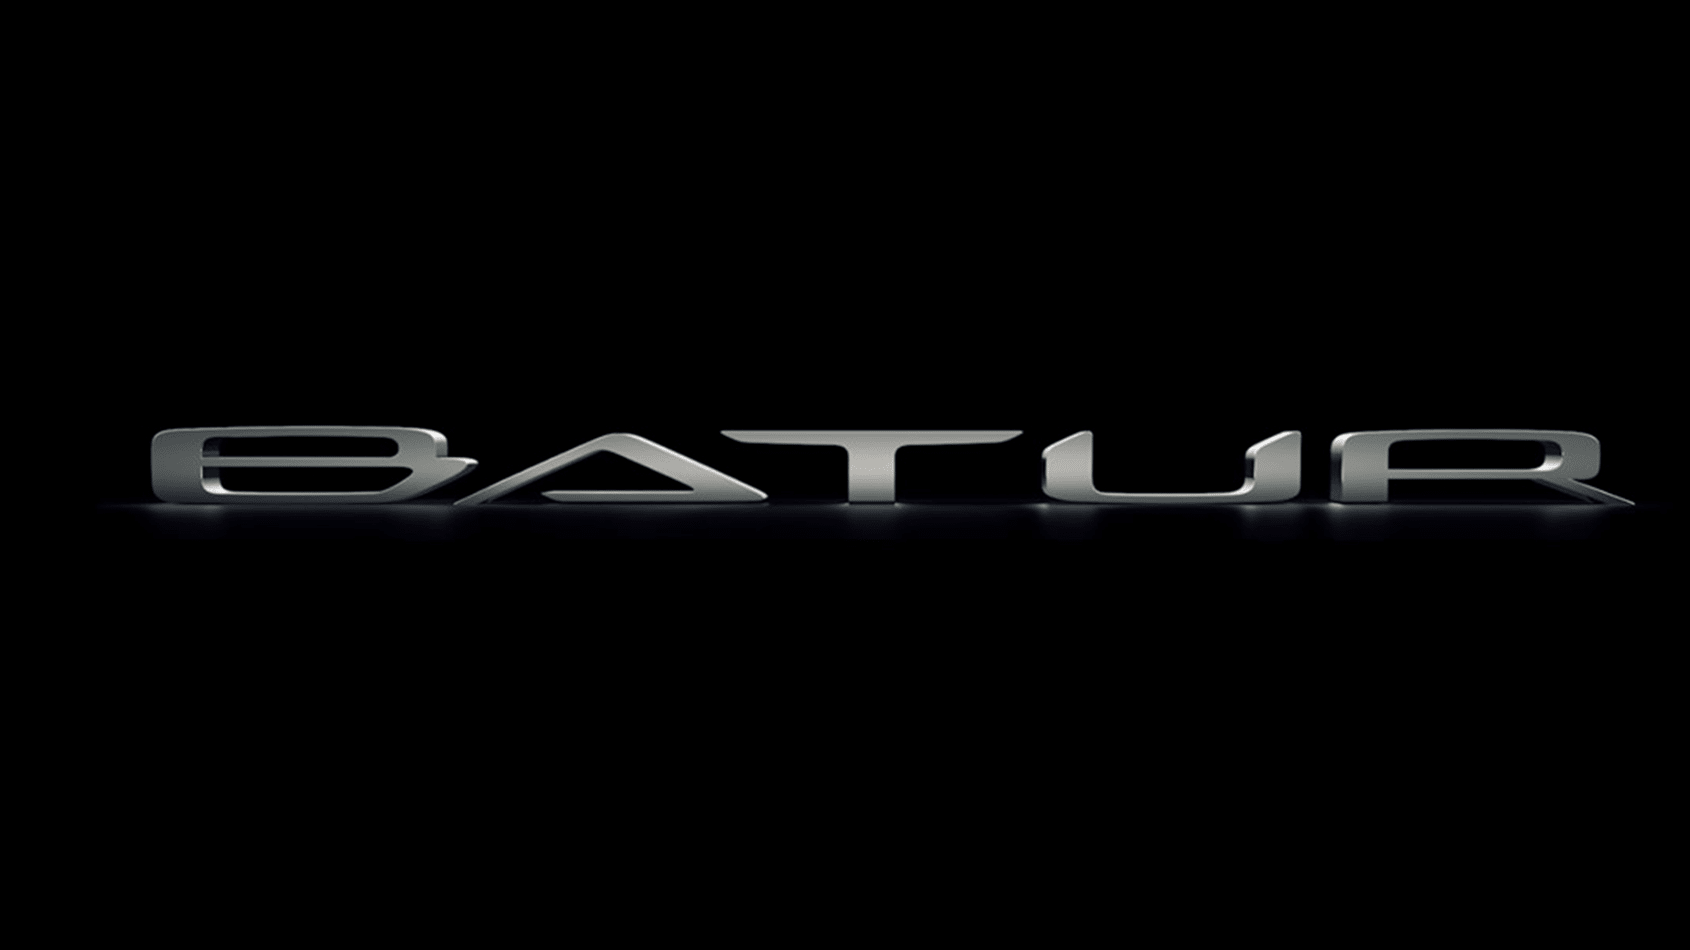 Bentley Batur teaser image